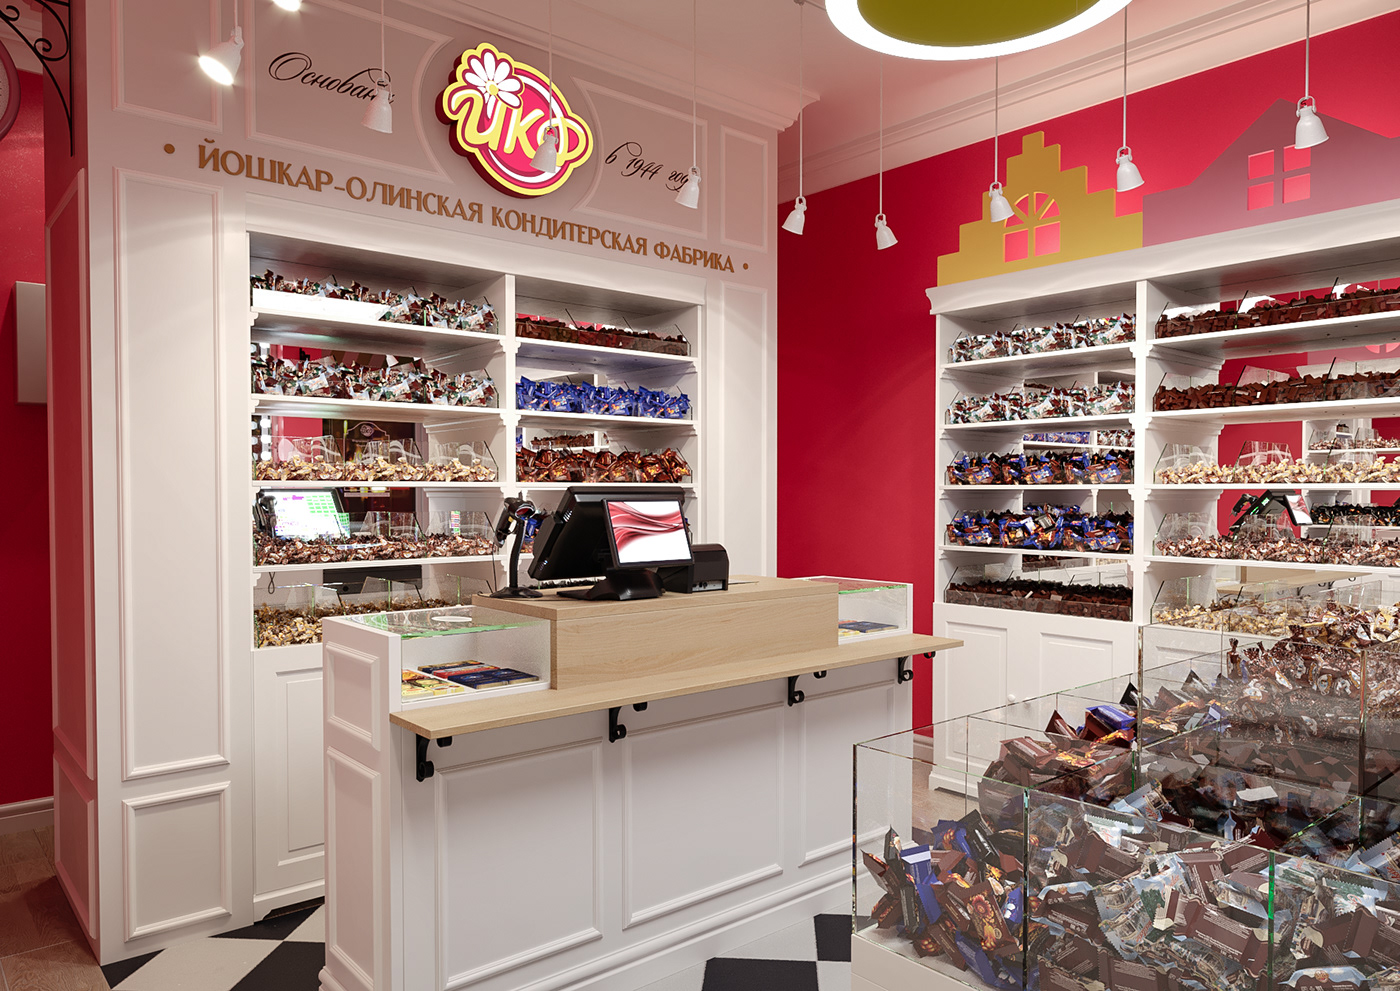 3D Candy Candy shop Interior interior design  market Render visualization магазин ритейл